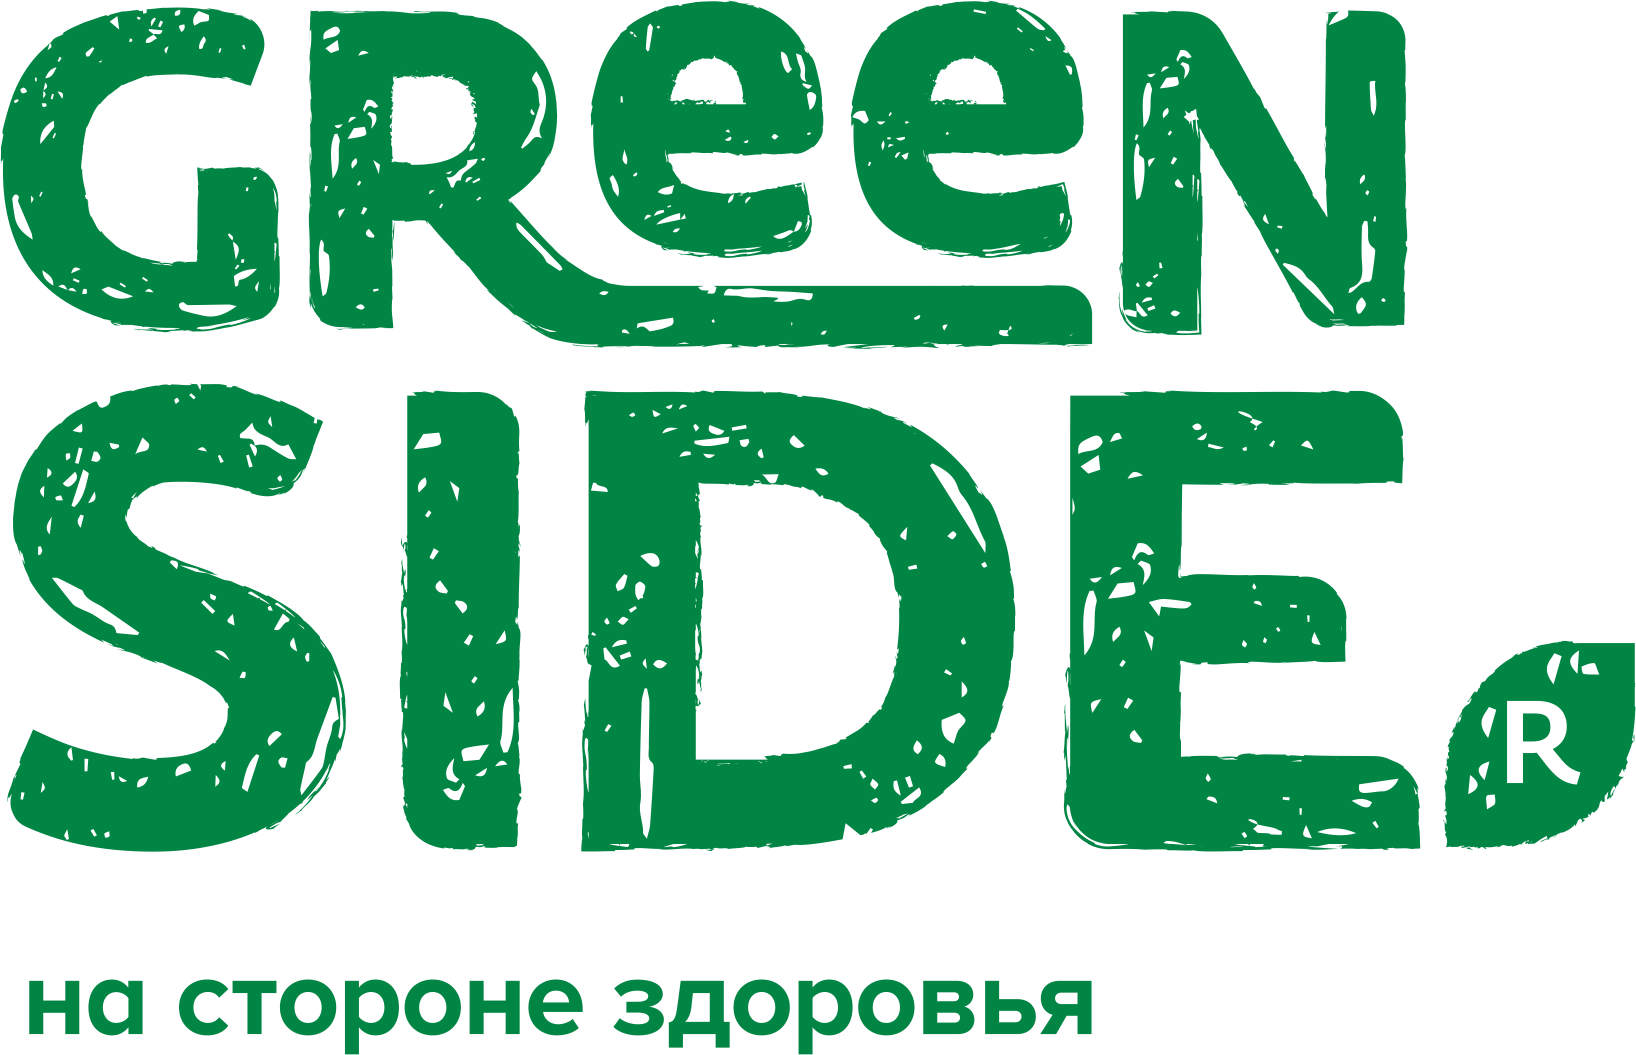 Green Side